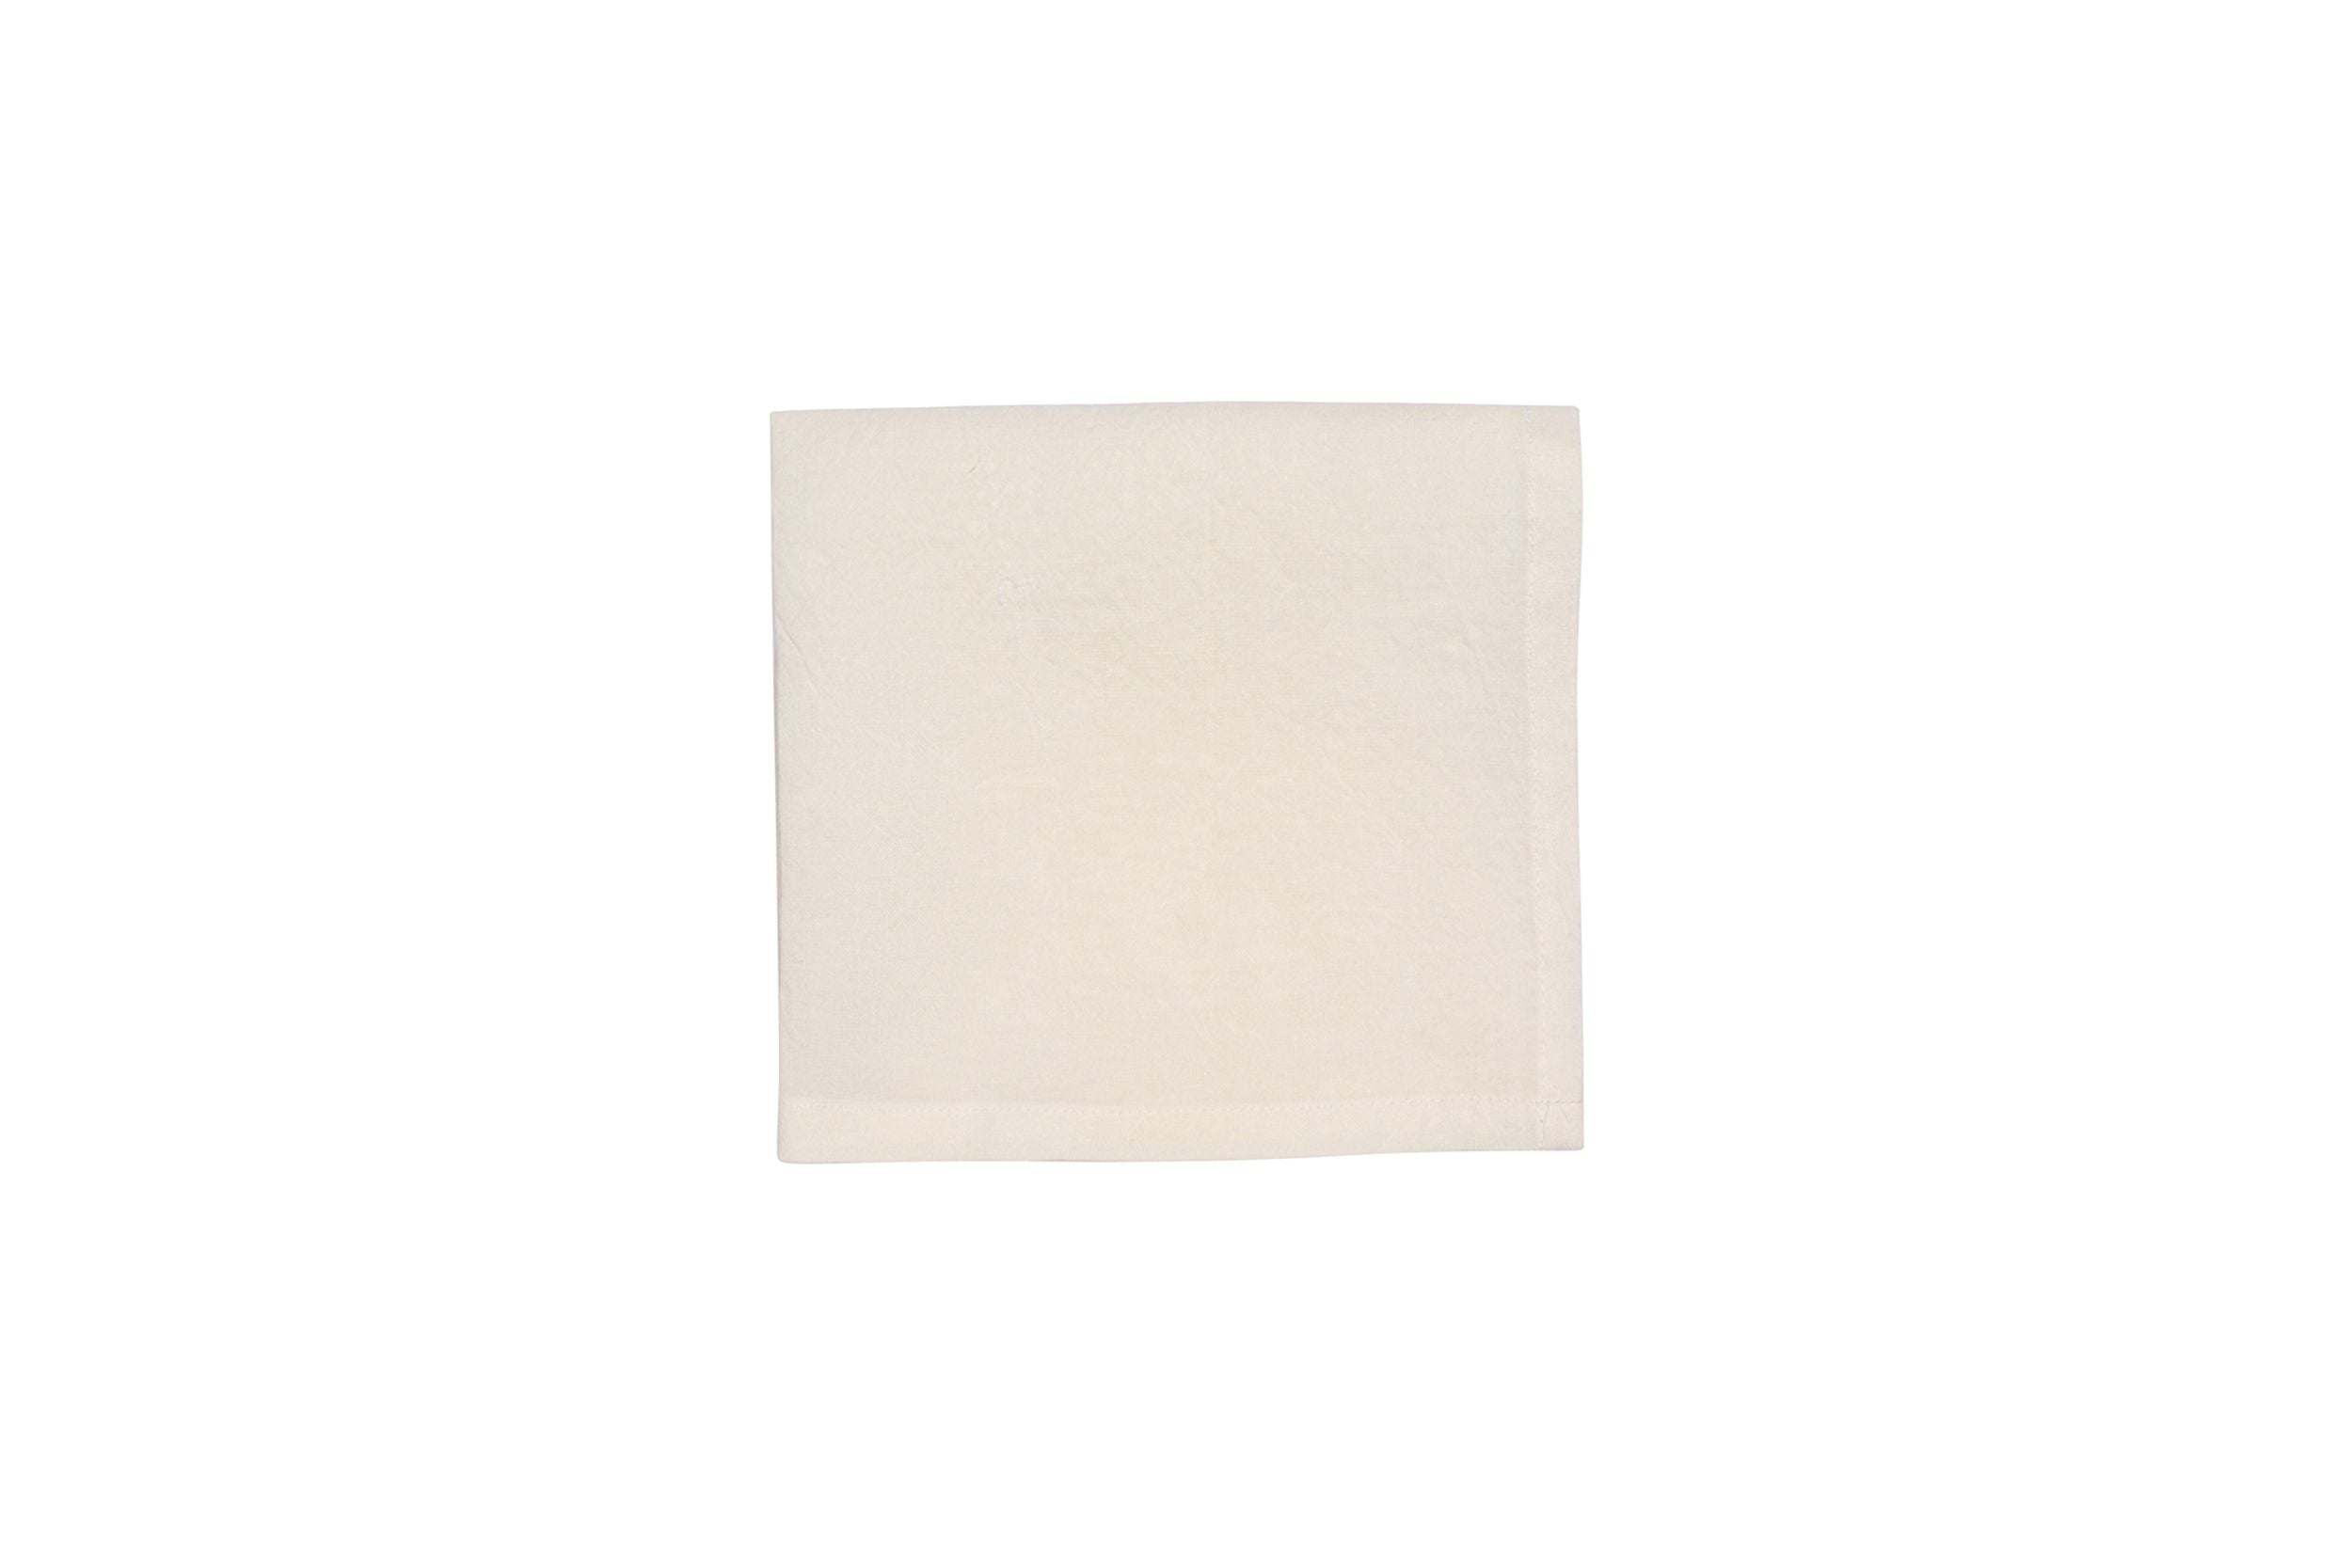 Set di 6 tovaglioli da tavola 45 X 45 CM in 100% puro lino lavato delavè stone washed morbido resistente elegante made in italy AVORIO - Vanita di raso